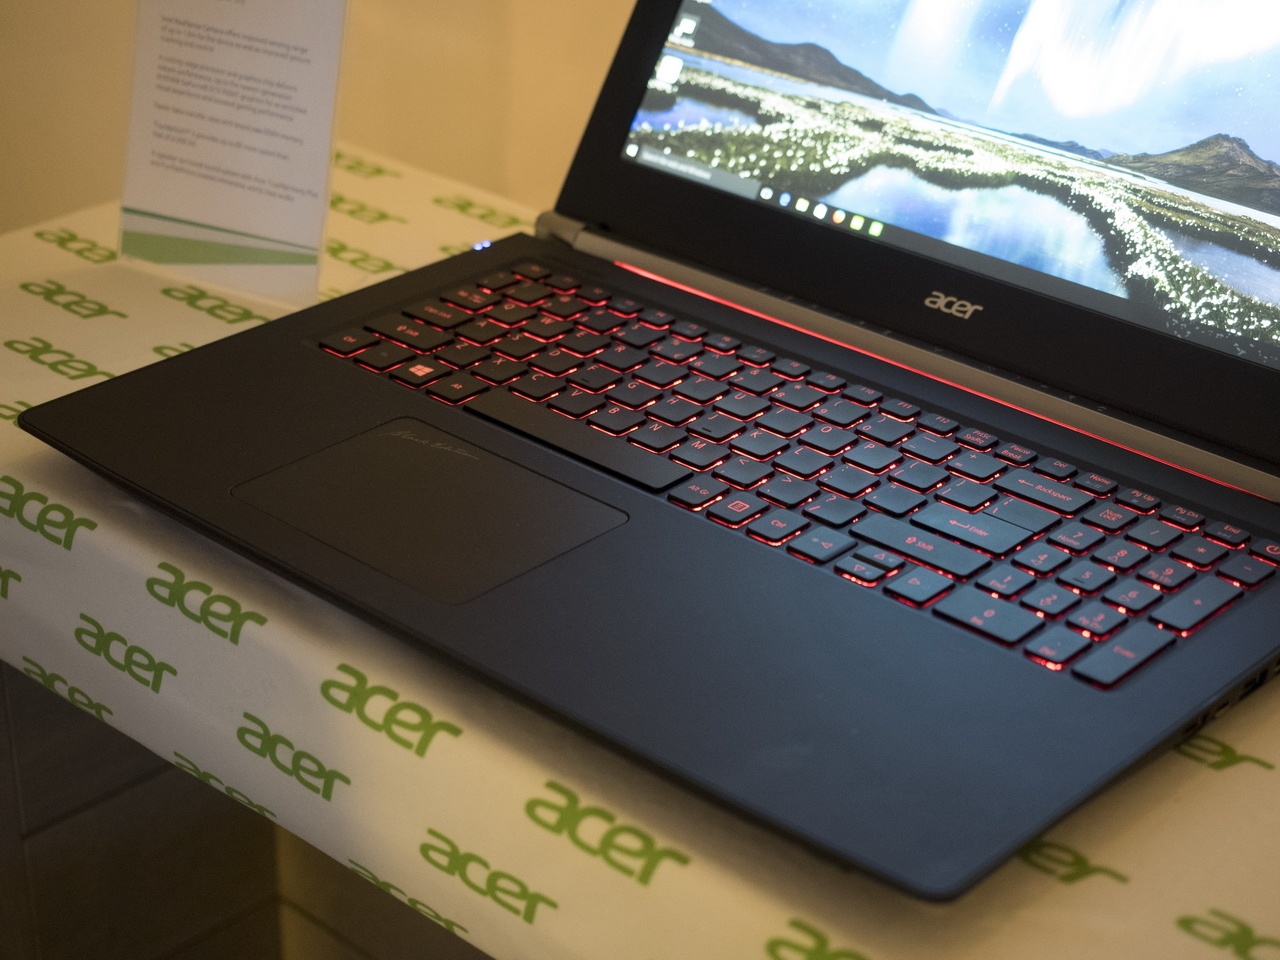 Acer на CES 2016: мониторы, планшеты, игровые ноутбуки и ультрамобильный трансформер - 25